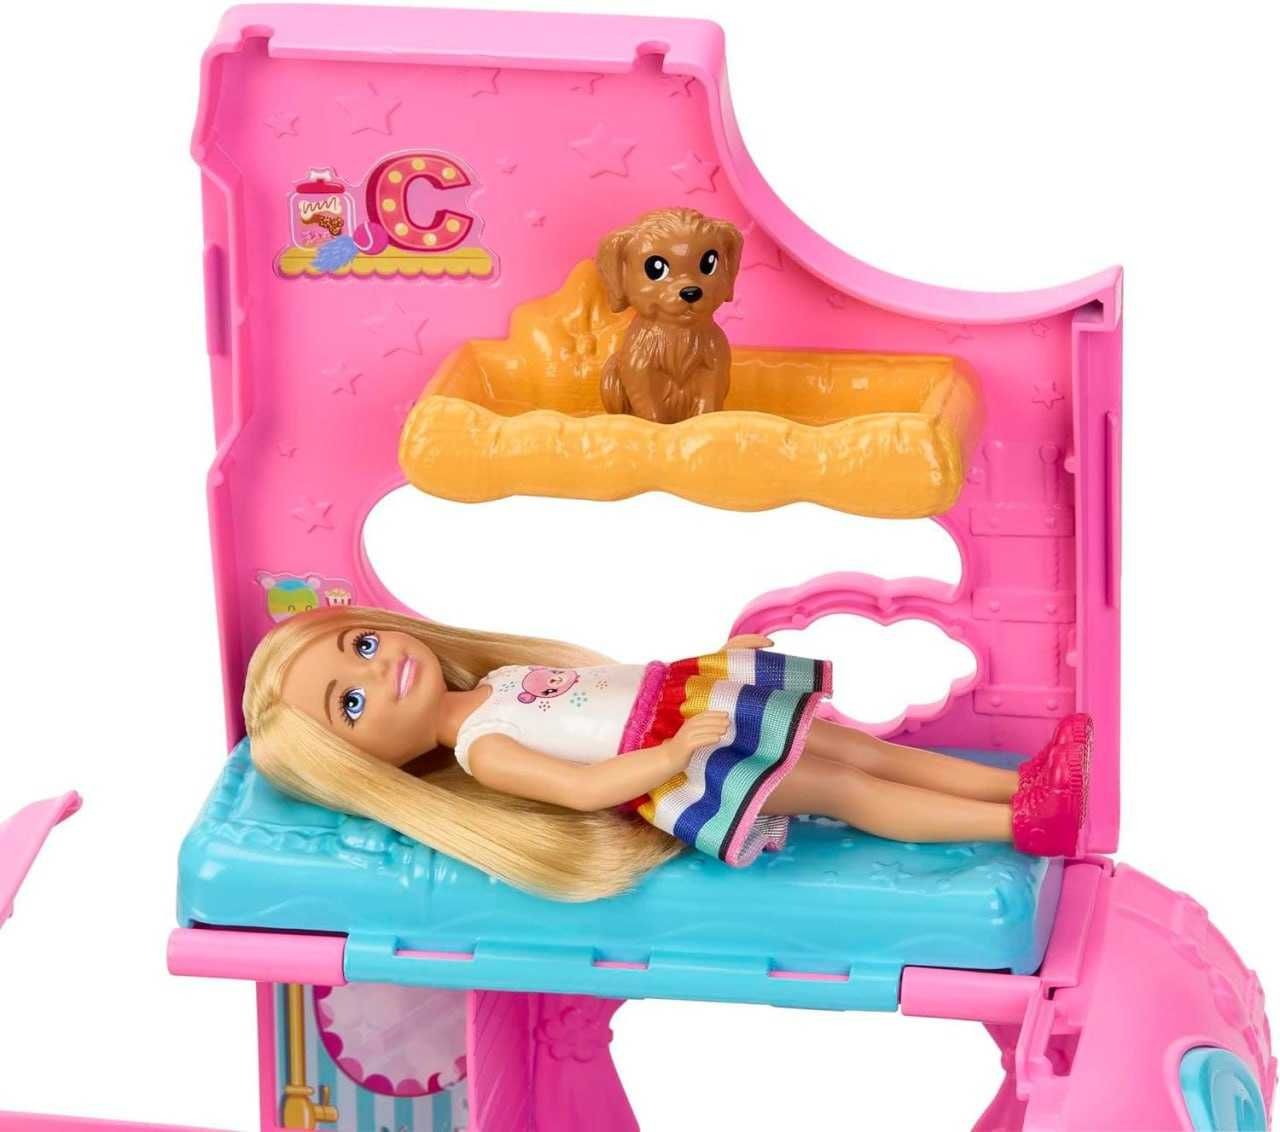 Barbie Camper игровой набор Челси 2 в 1 с маленькой куклой